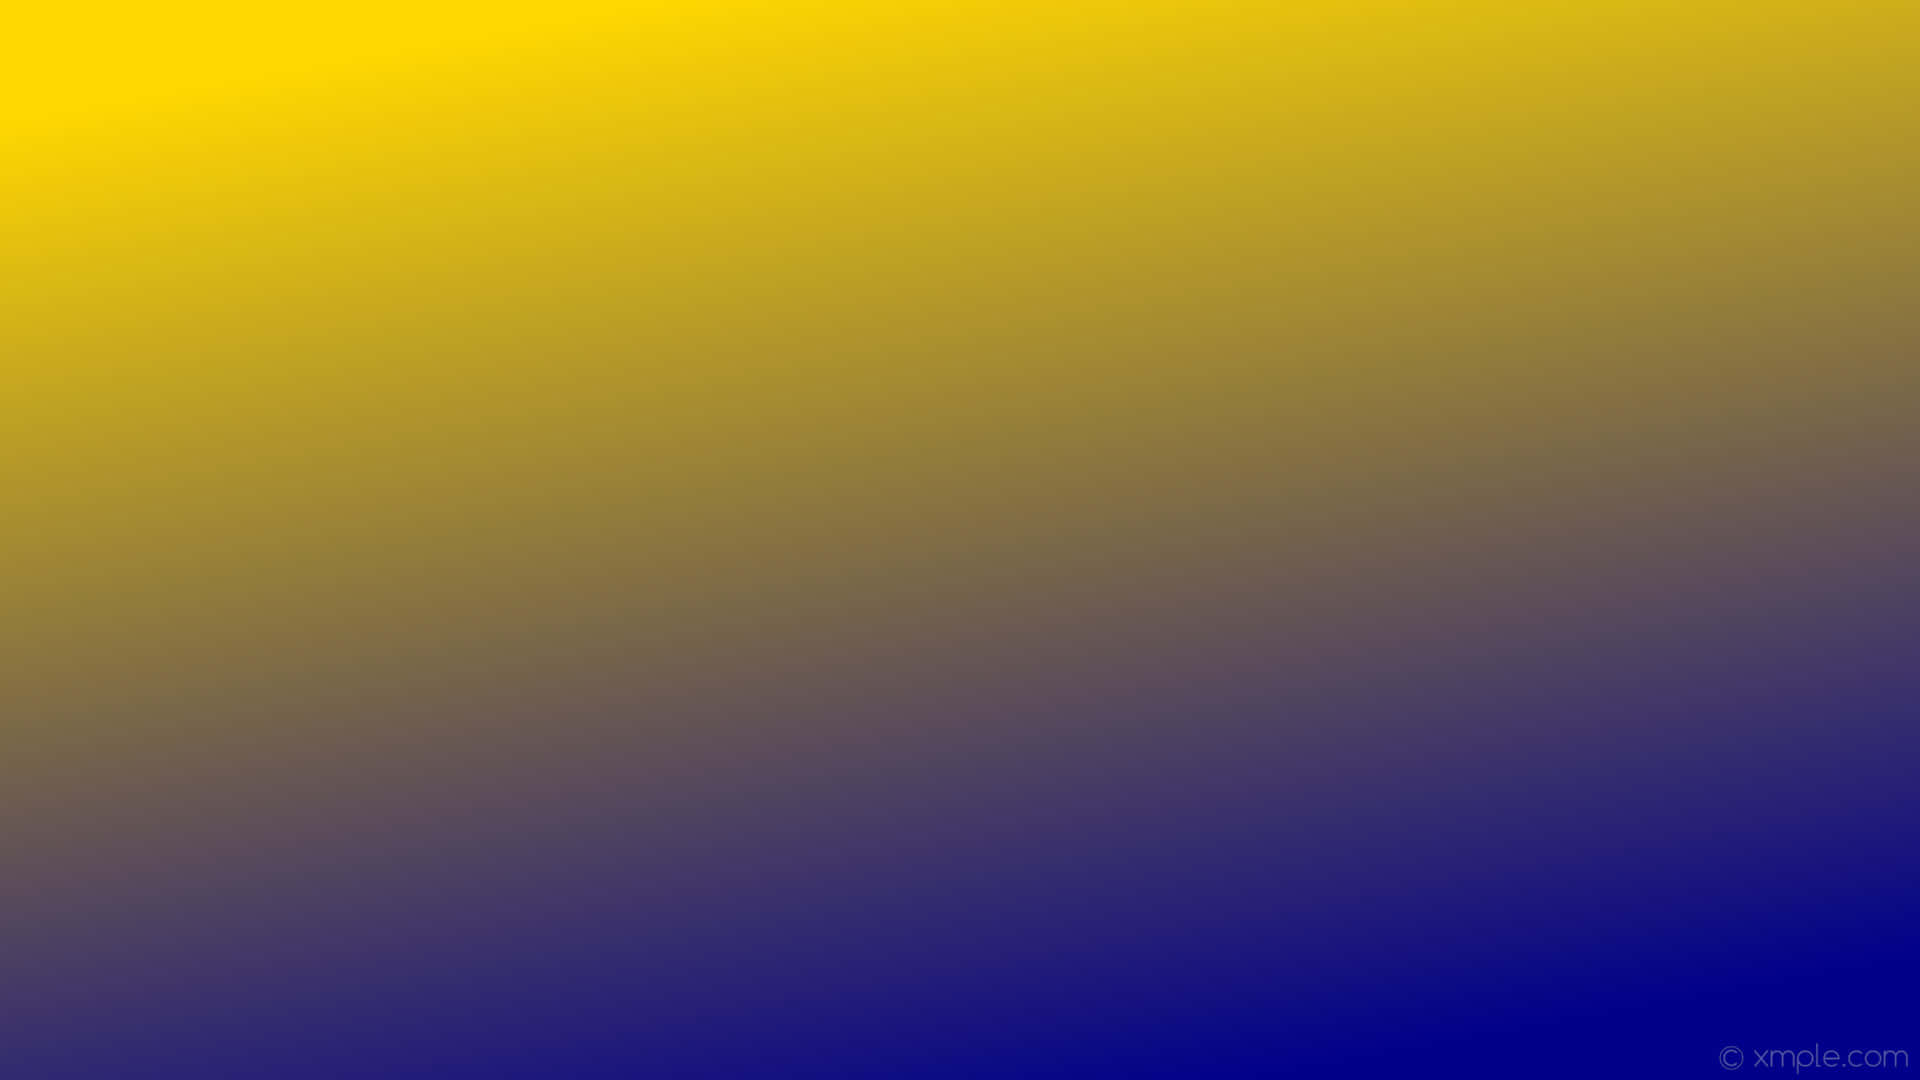 dark yellow gradient background